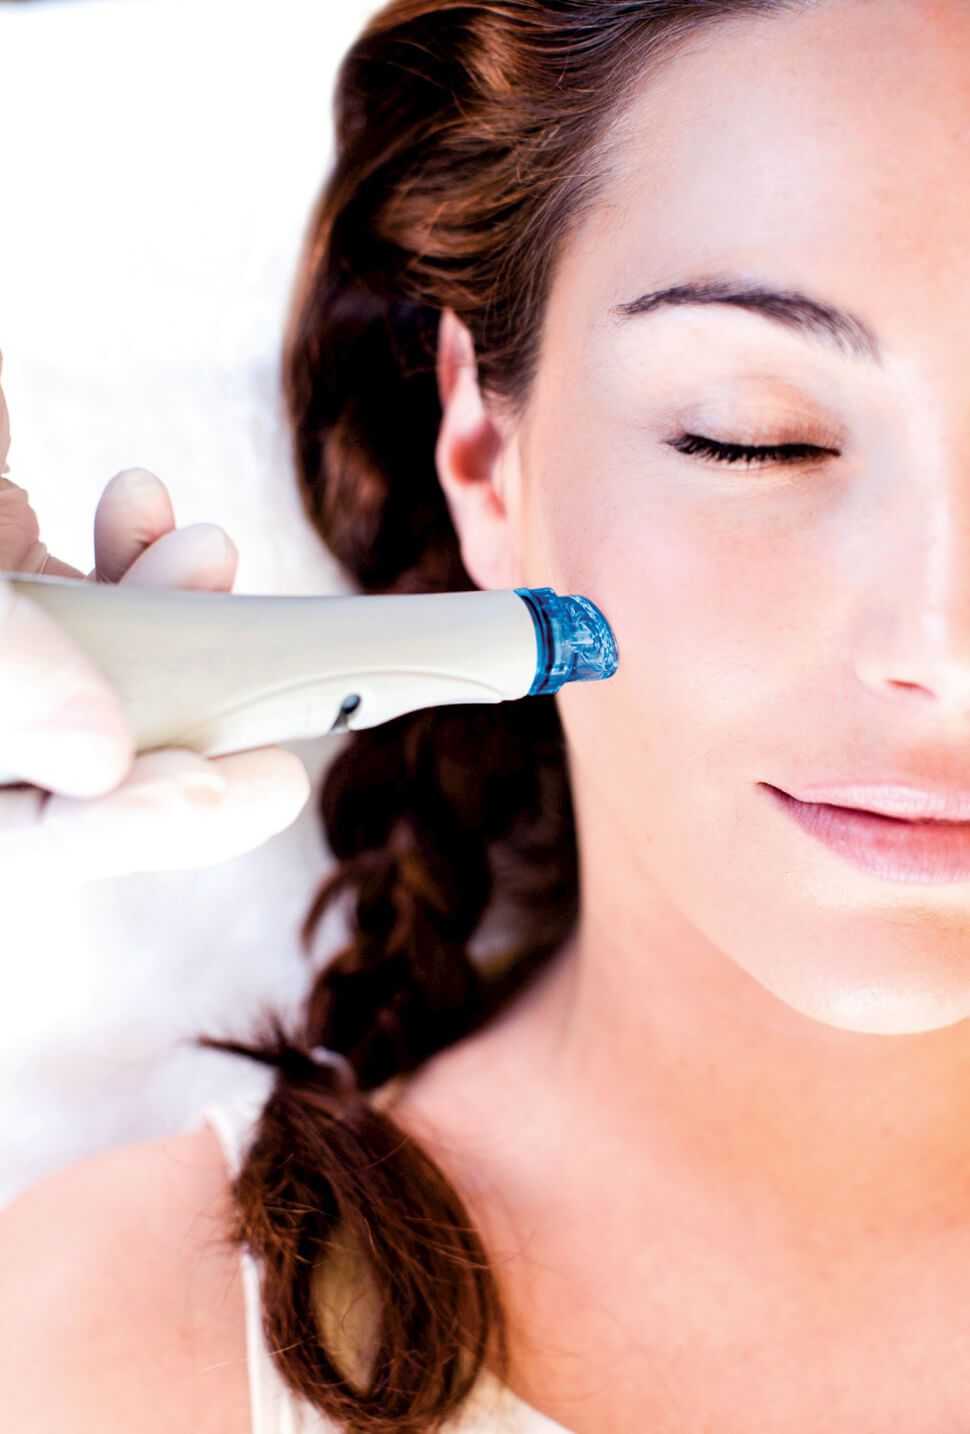 Технология Hydrafacial md® позволяет выбрать программу лечения кожи, которая подойдет именно вам.